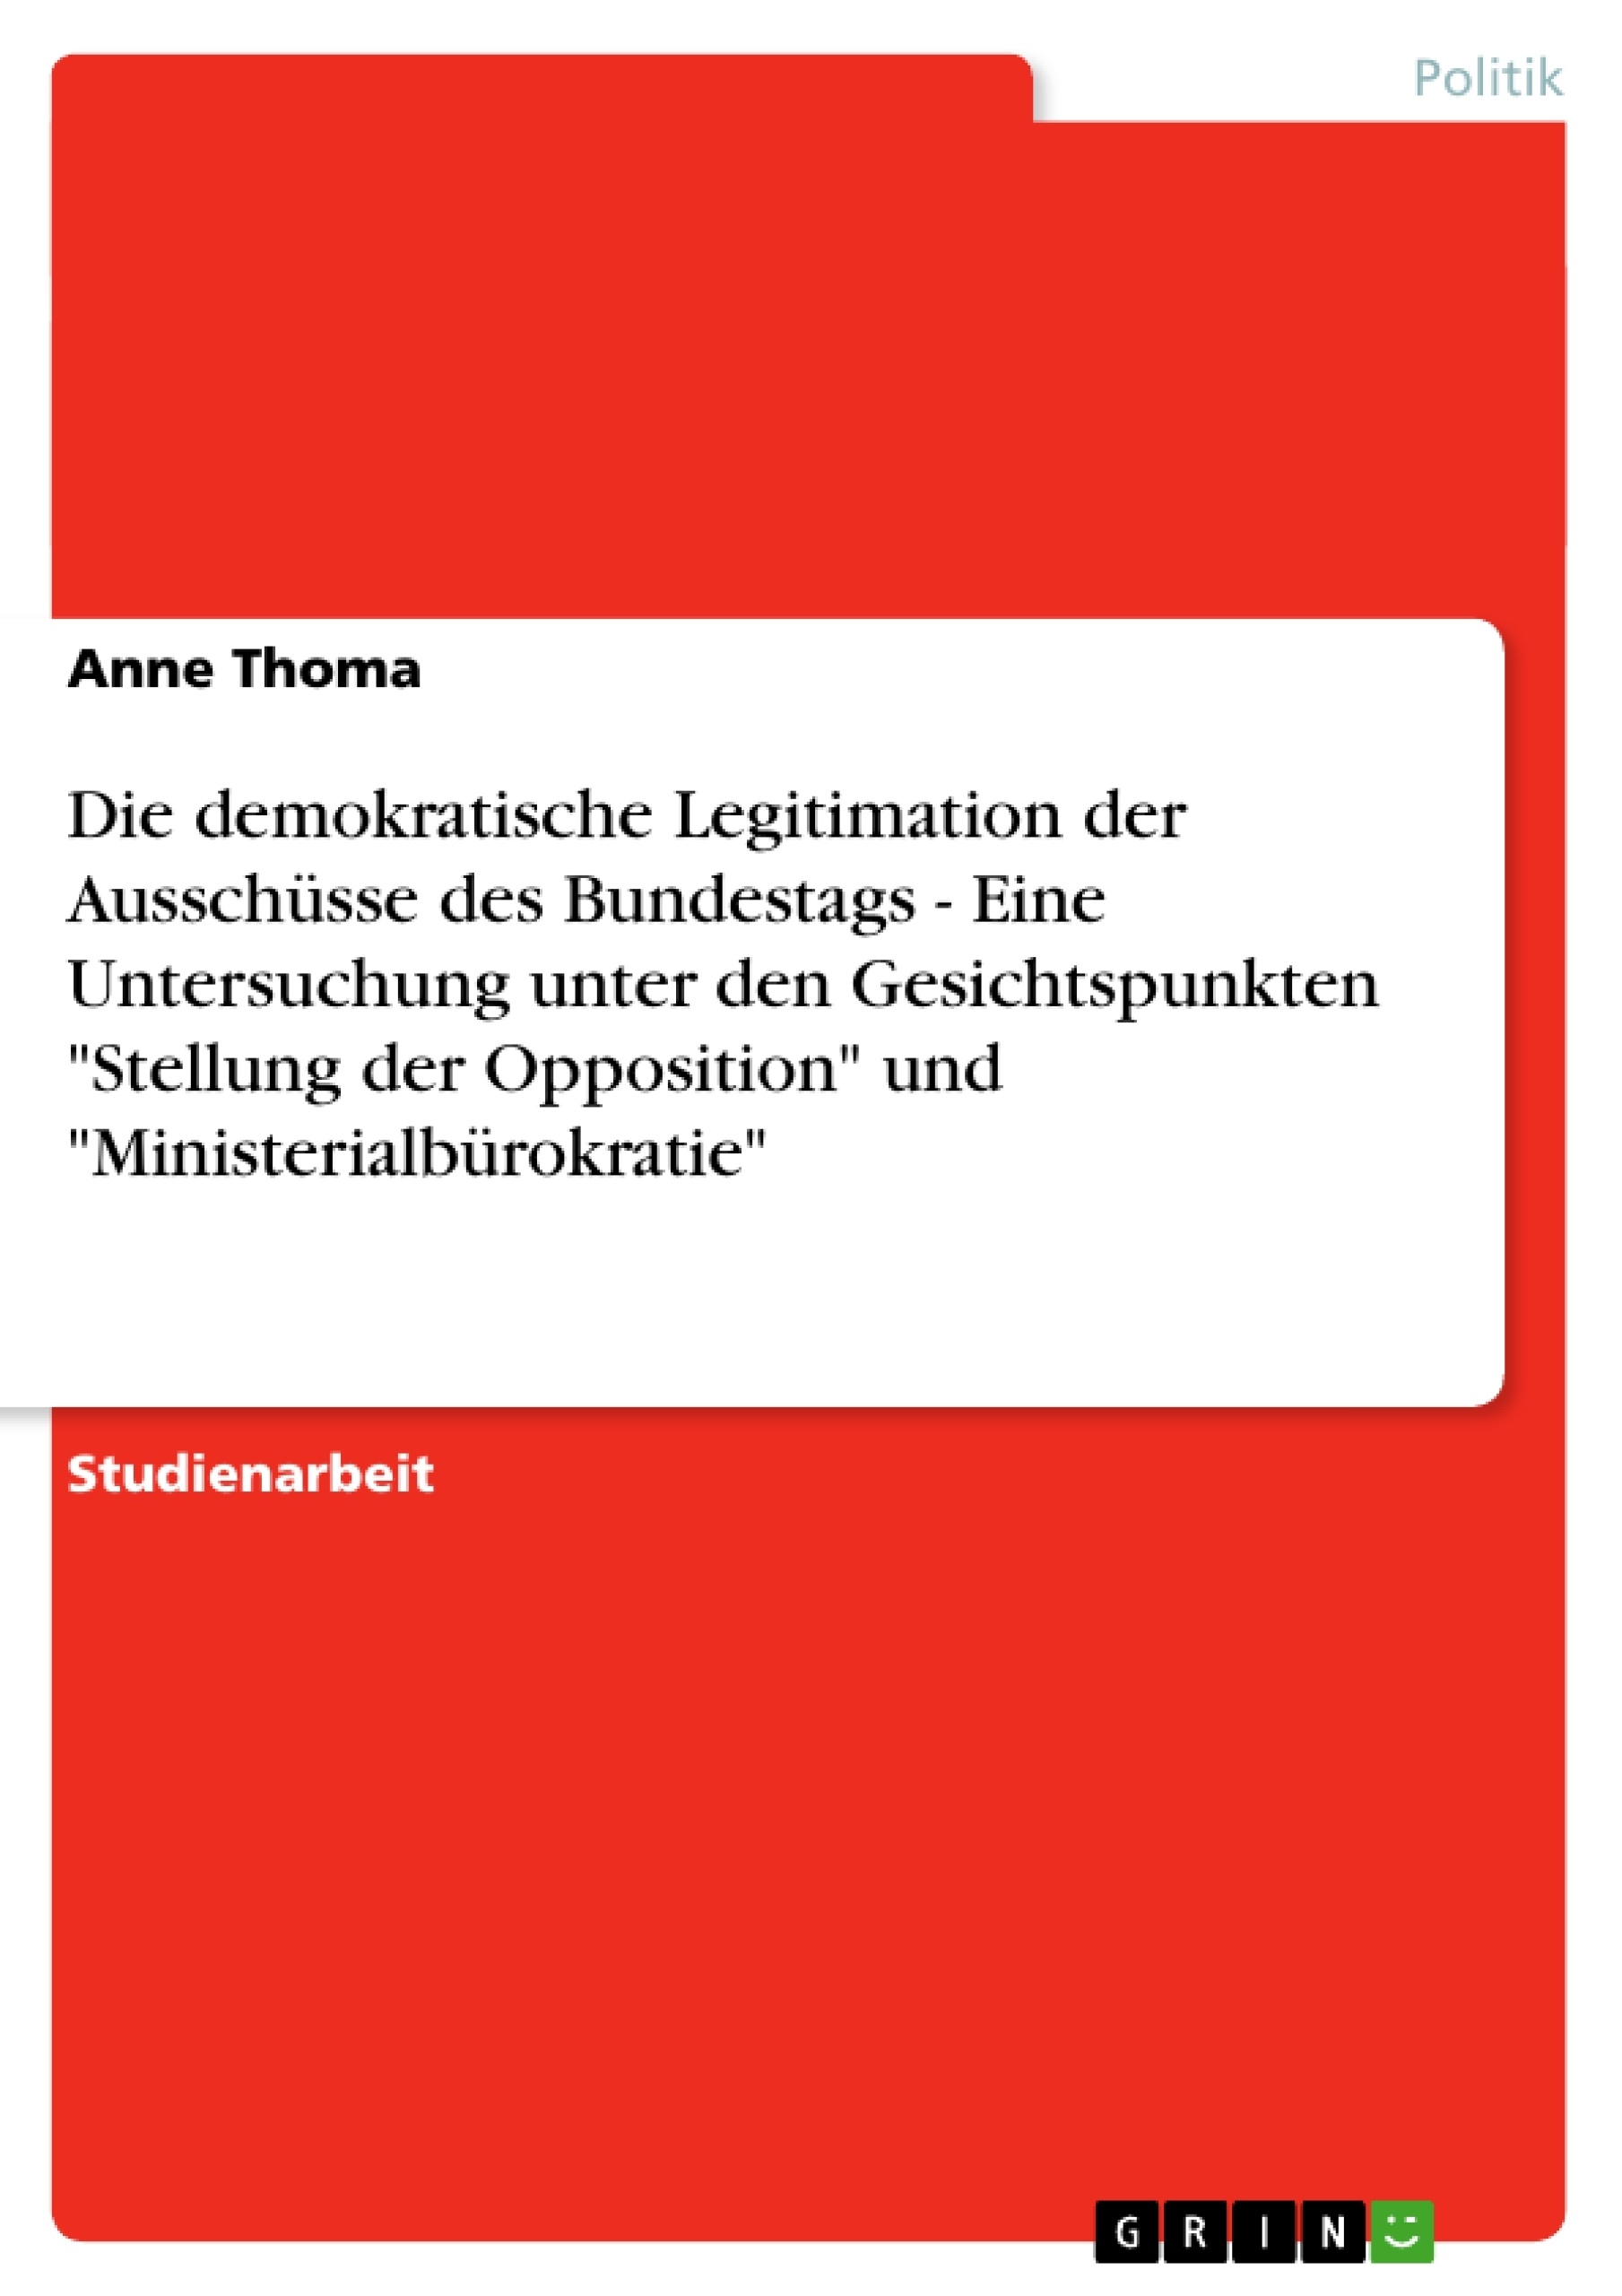 Titre: Die demokratische Legitimation der Ausschüsse des Bundestags - Eine Untersuchung unter den Gesichtspunkten "Stellung der Opposition" und "Ministerialbürokratie"